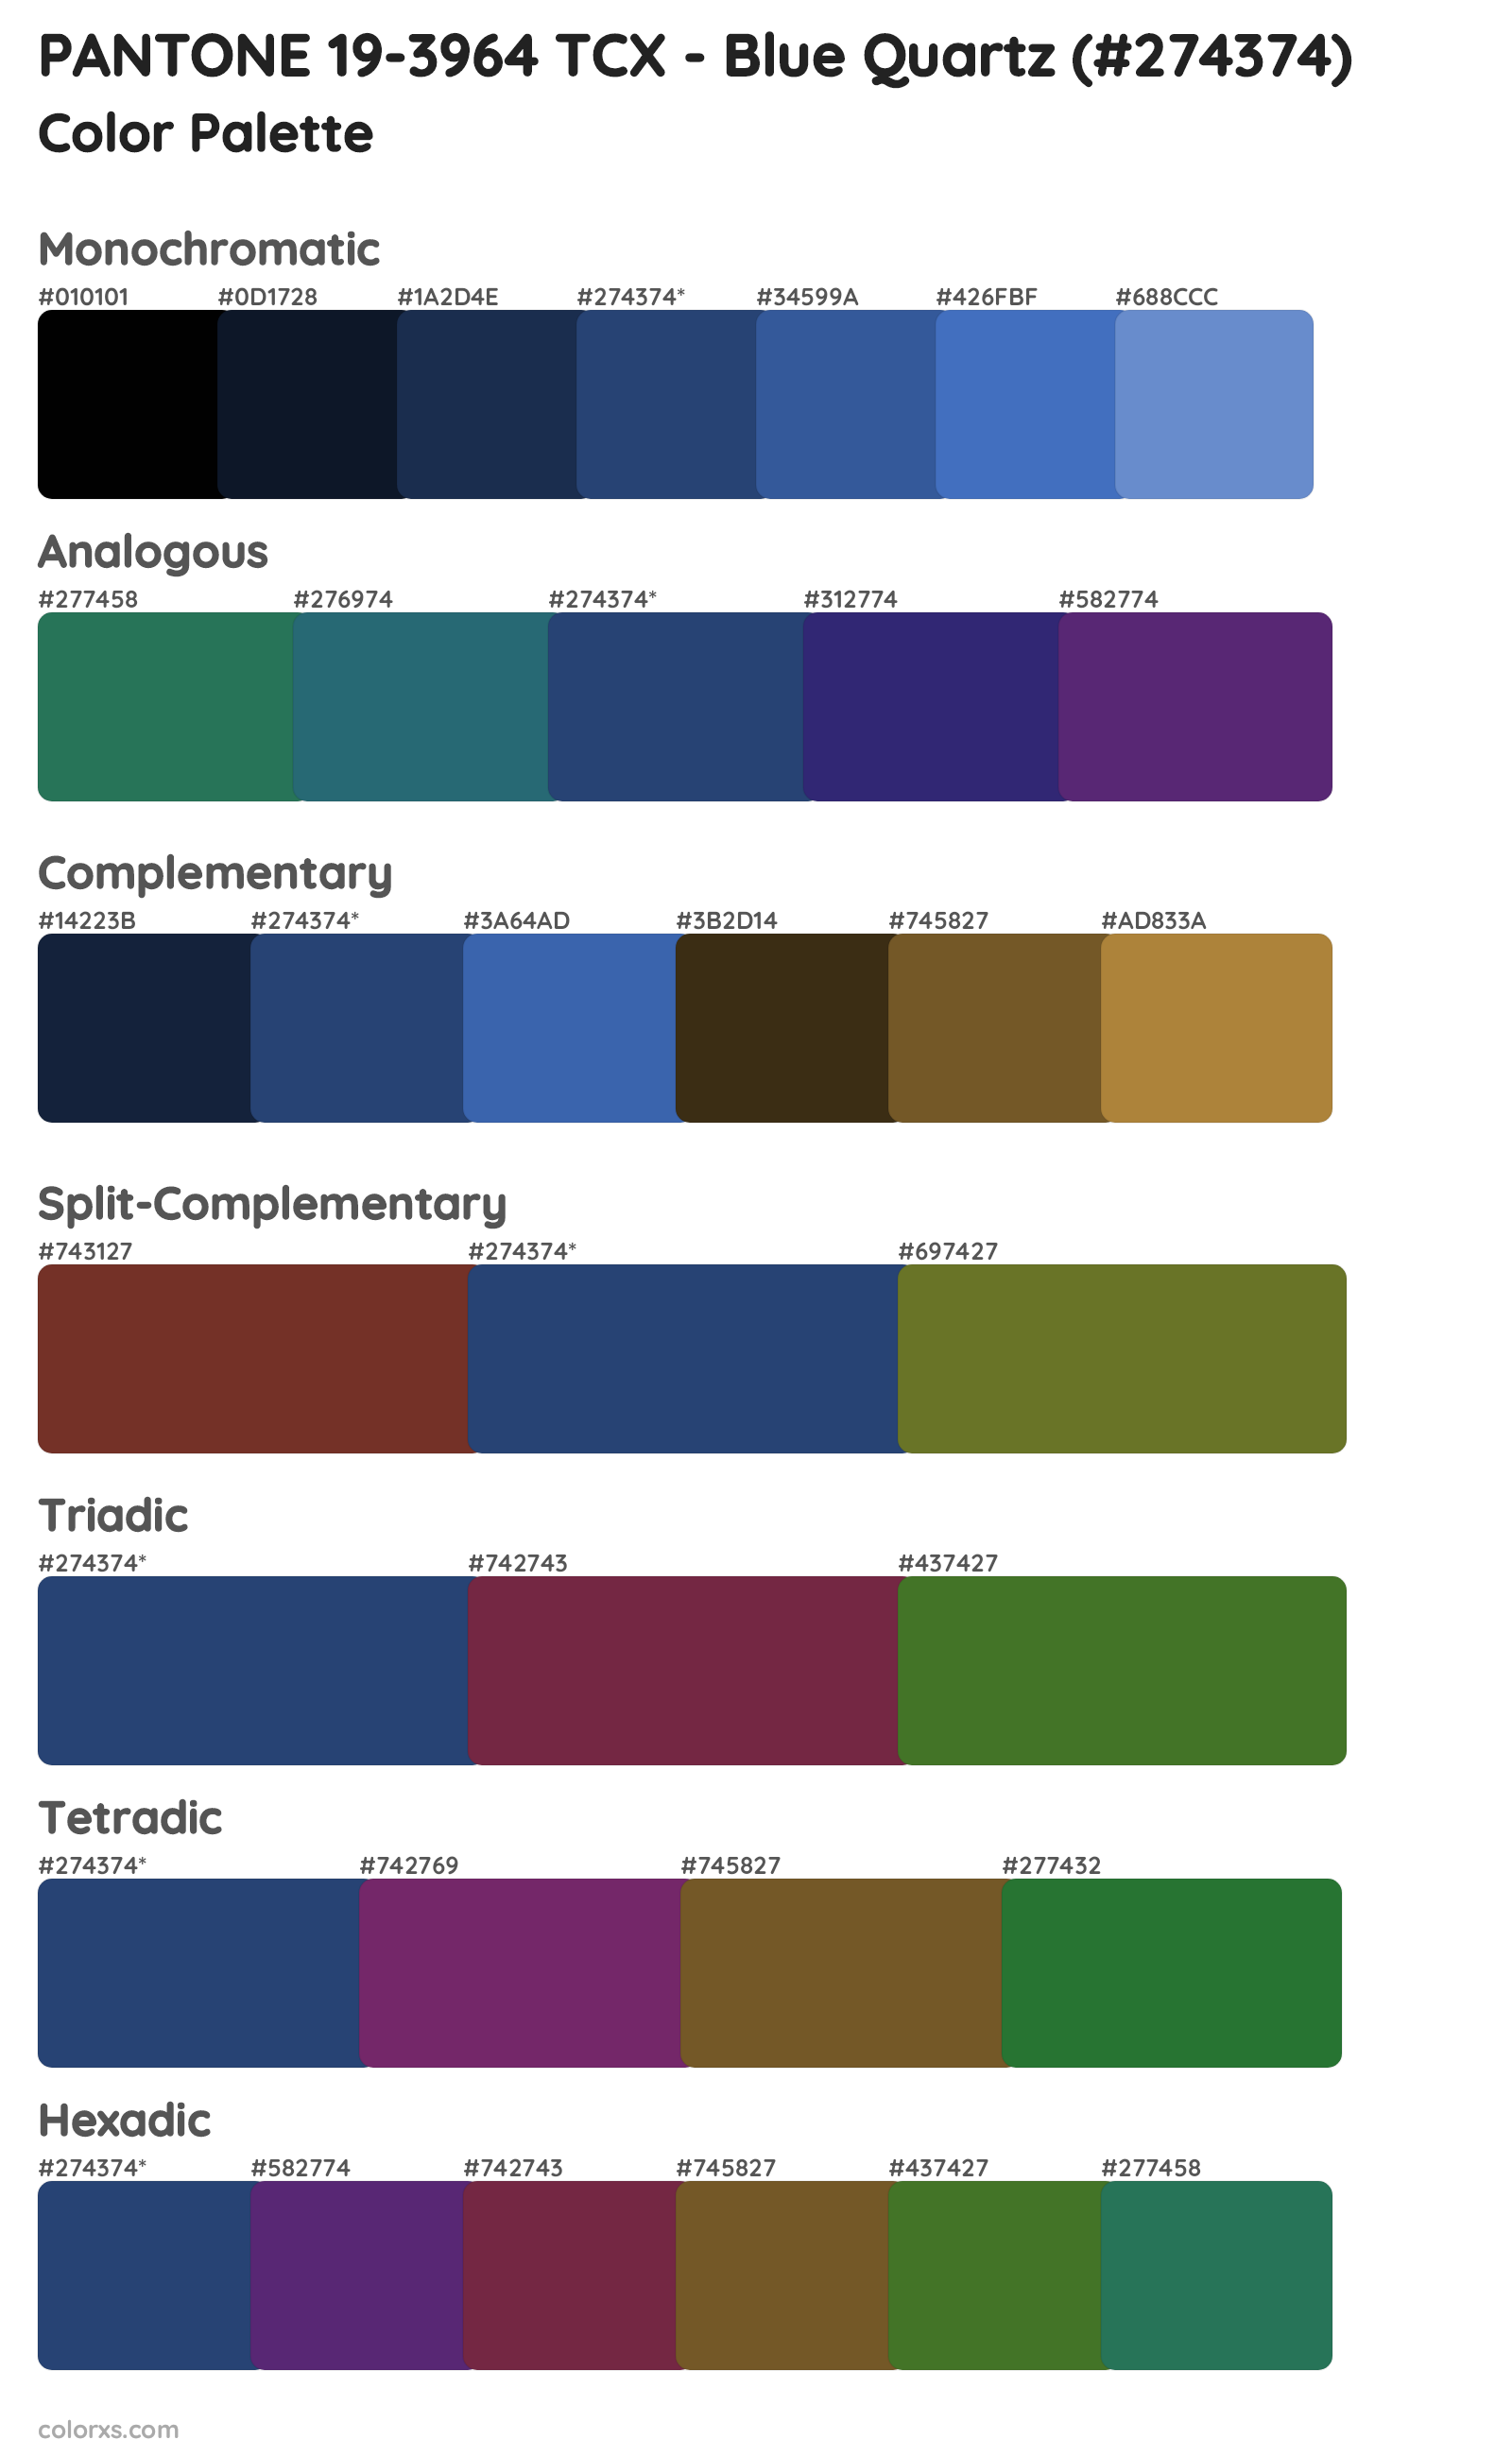 PANTONE 19-3964 TCX - Blue Quartz Color Scheme Palettes